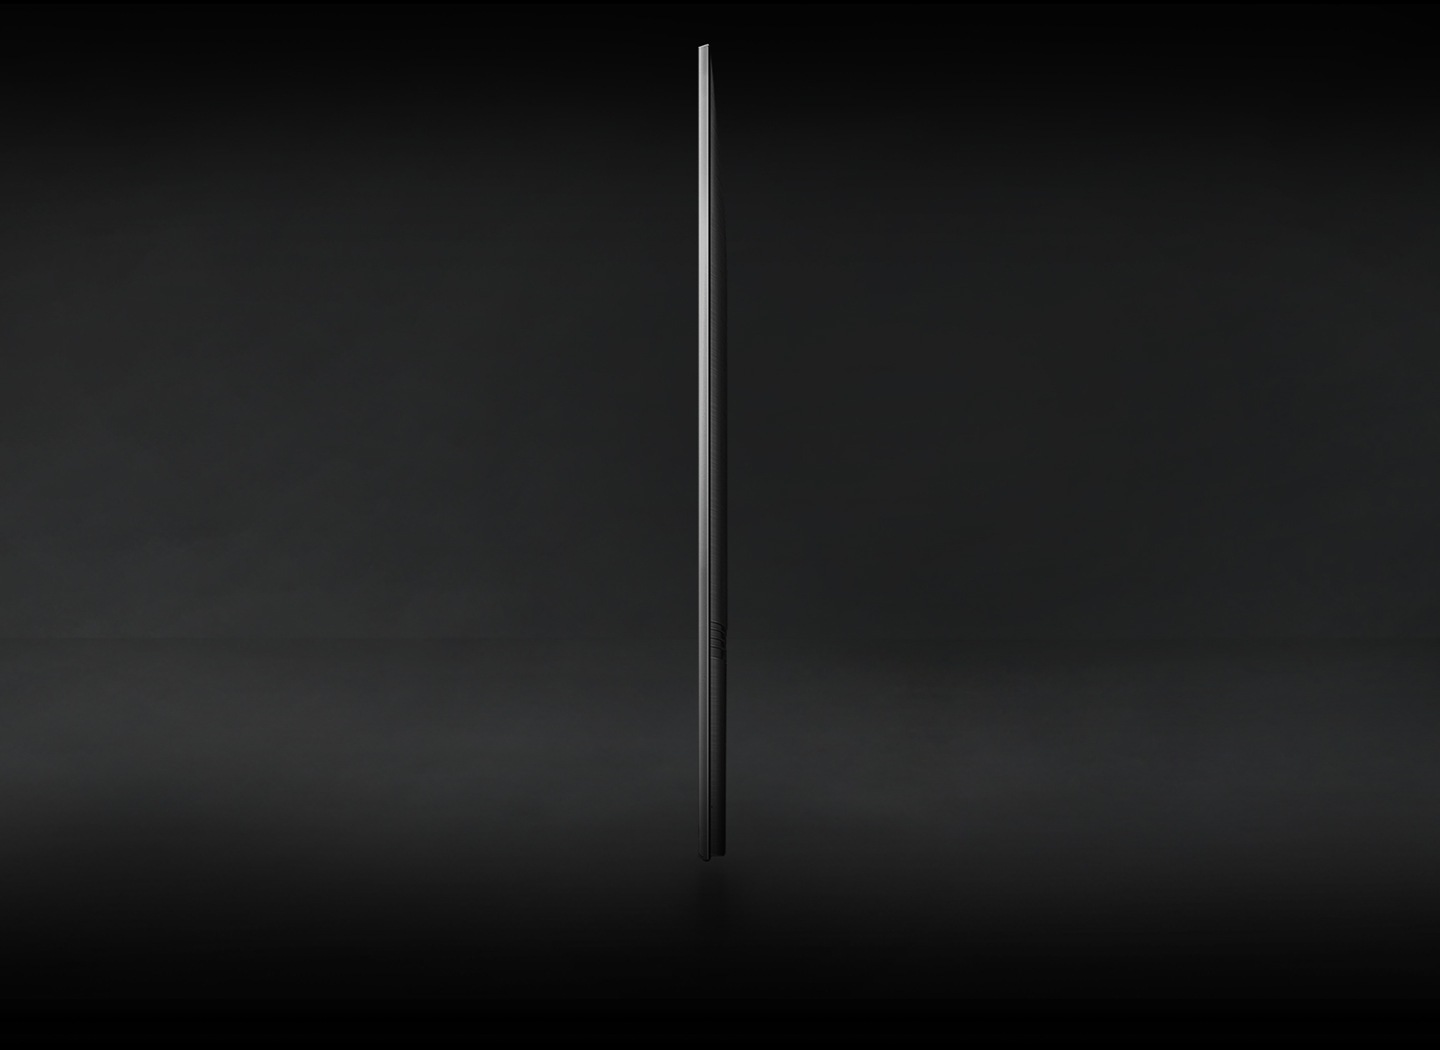 Bočni profil Crystal UHD TV-a je prikazan kako bi se pokazao njegov tanak dizajn.